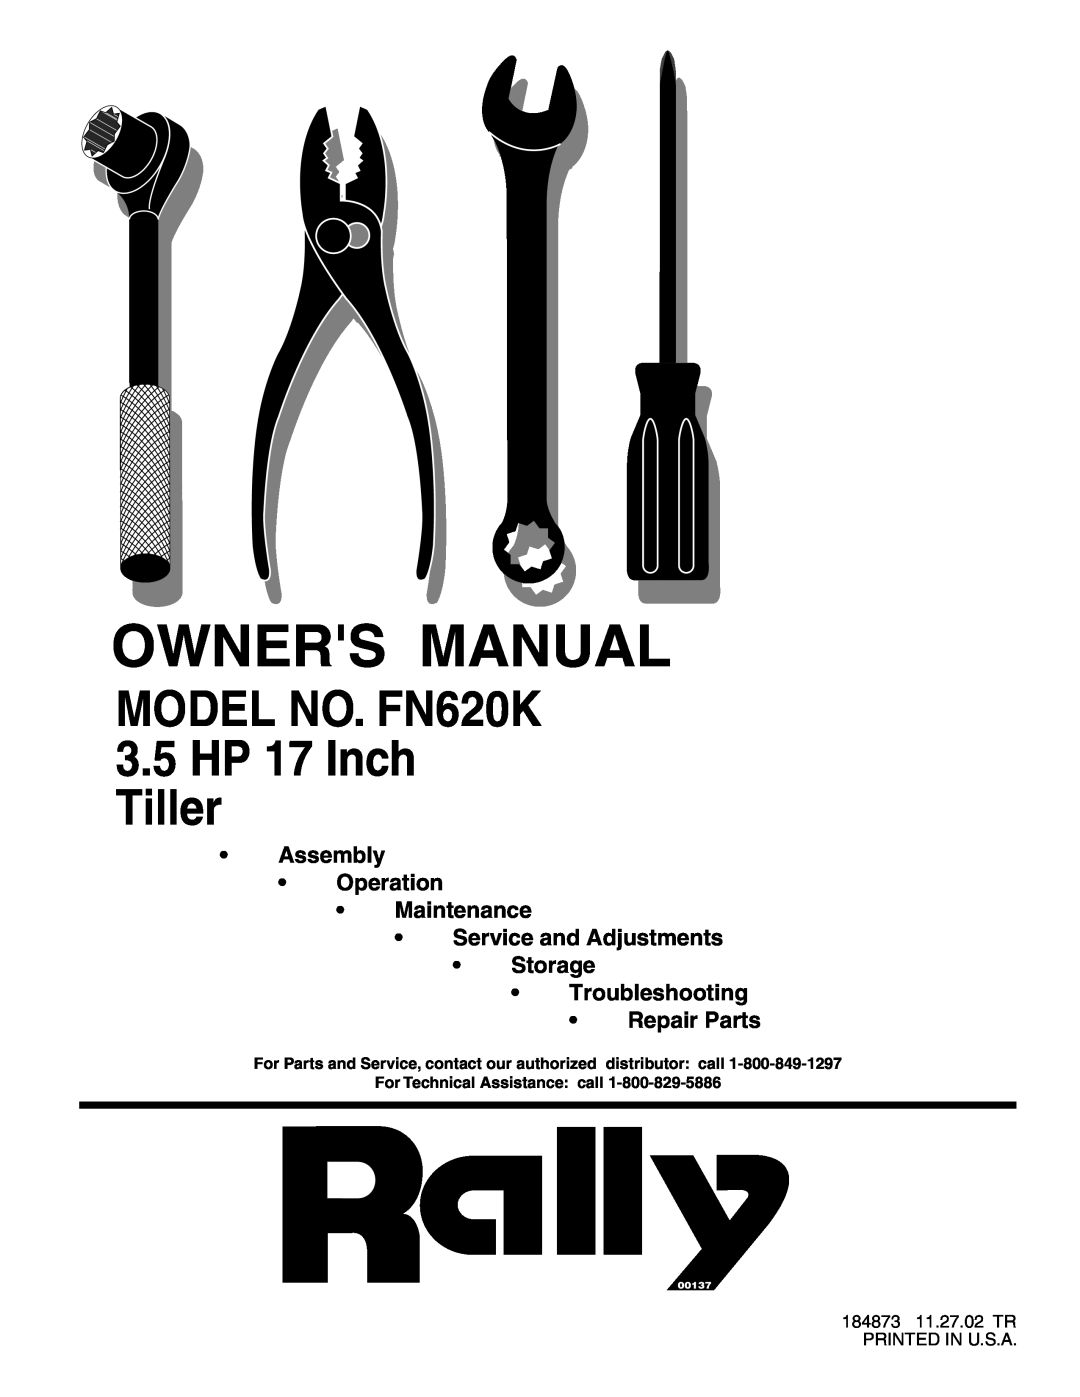 Electrolux owner manual MODEL NO. FN620K 3.5HP 17 Inch Tiller, Assembly Operation Maintenance, 00137 